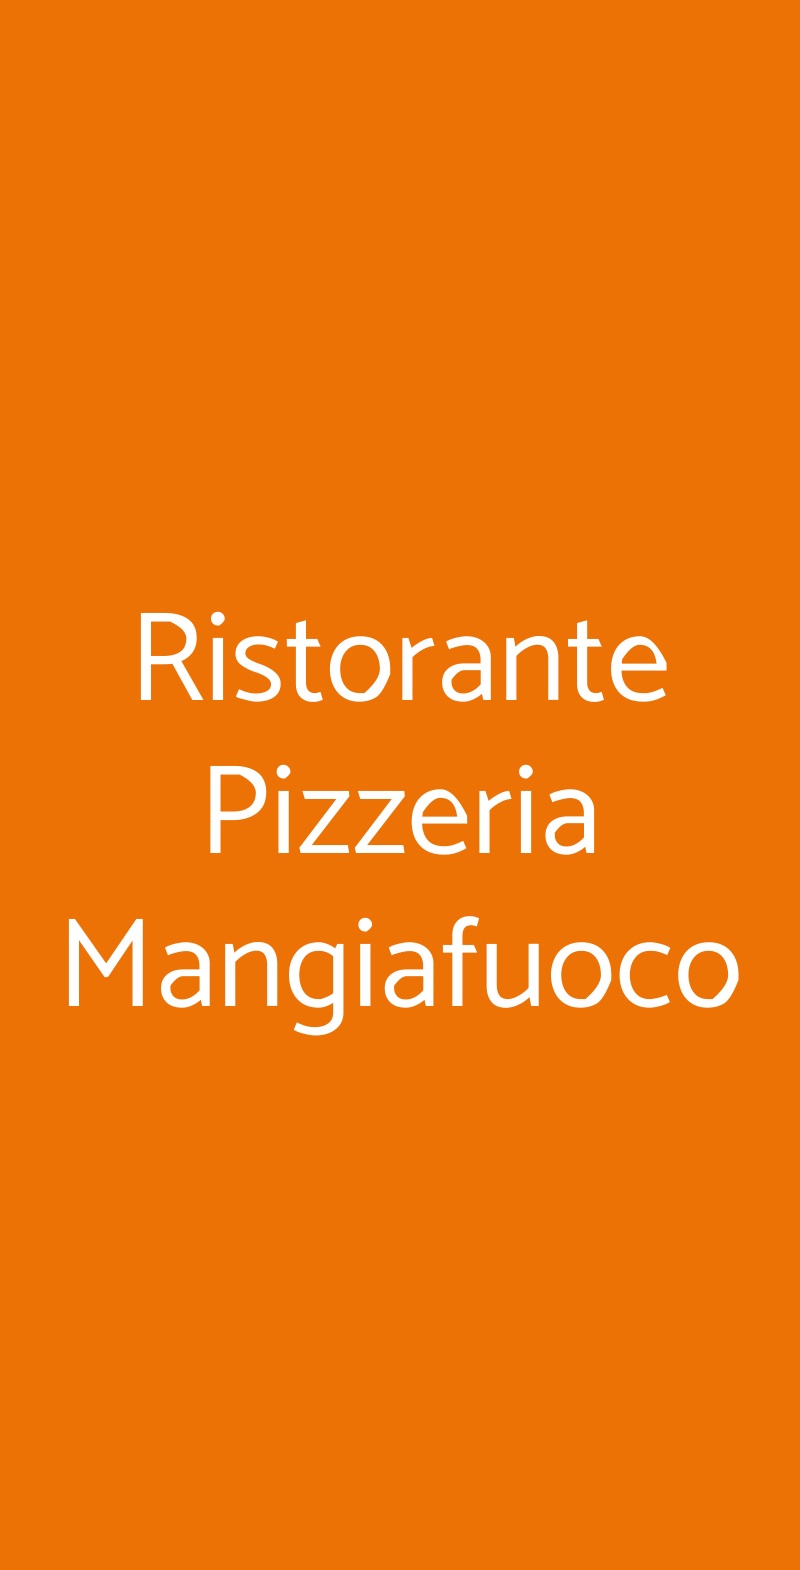 Ristorante Pizzeria Mangiafuoco Bologna menù 1 pagina